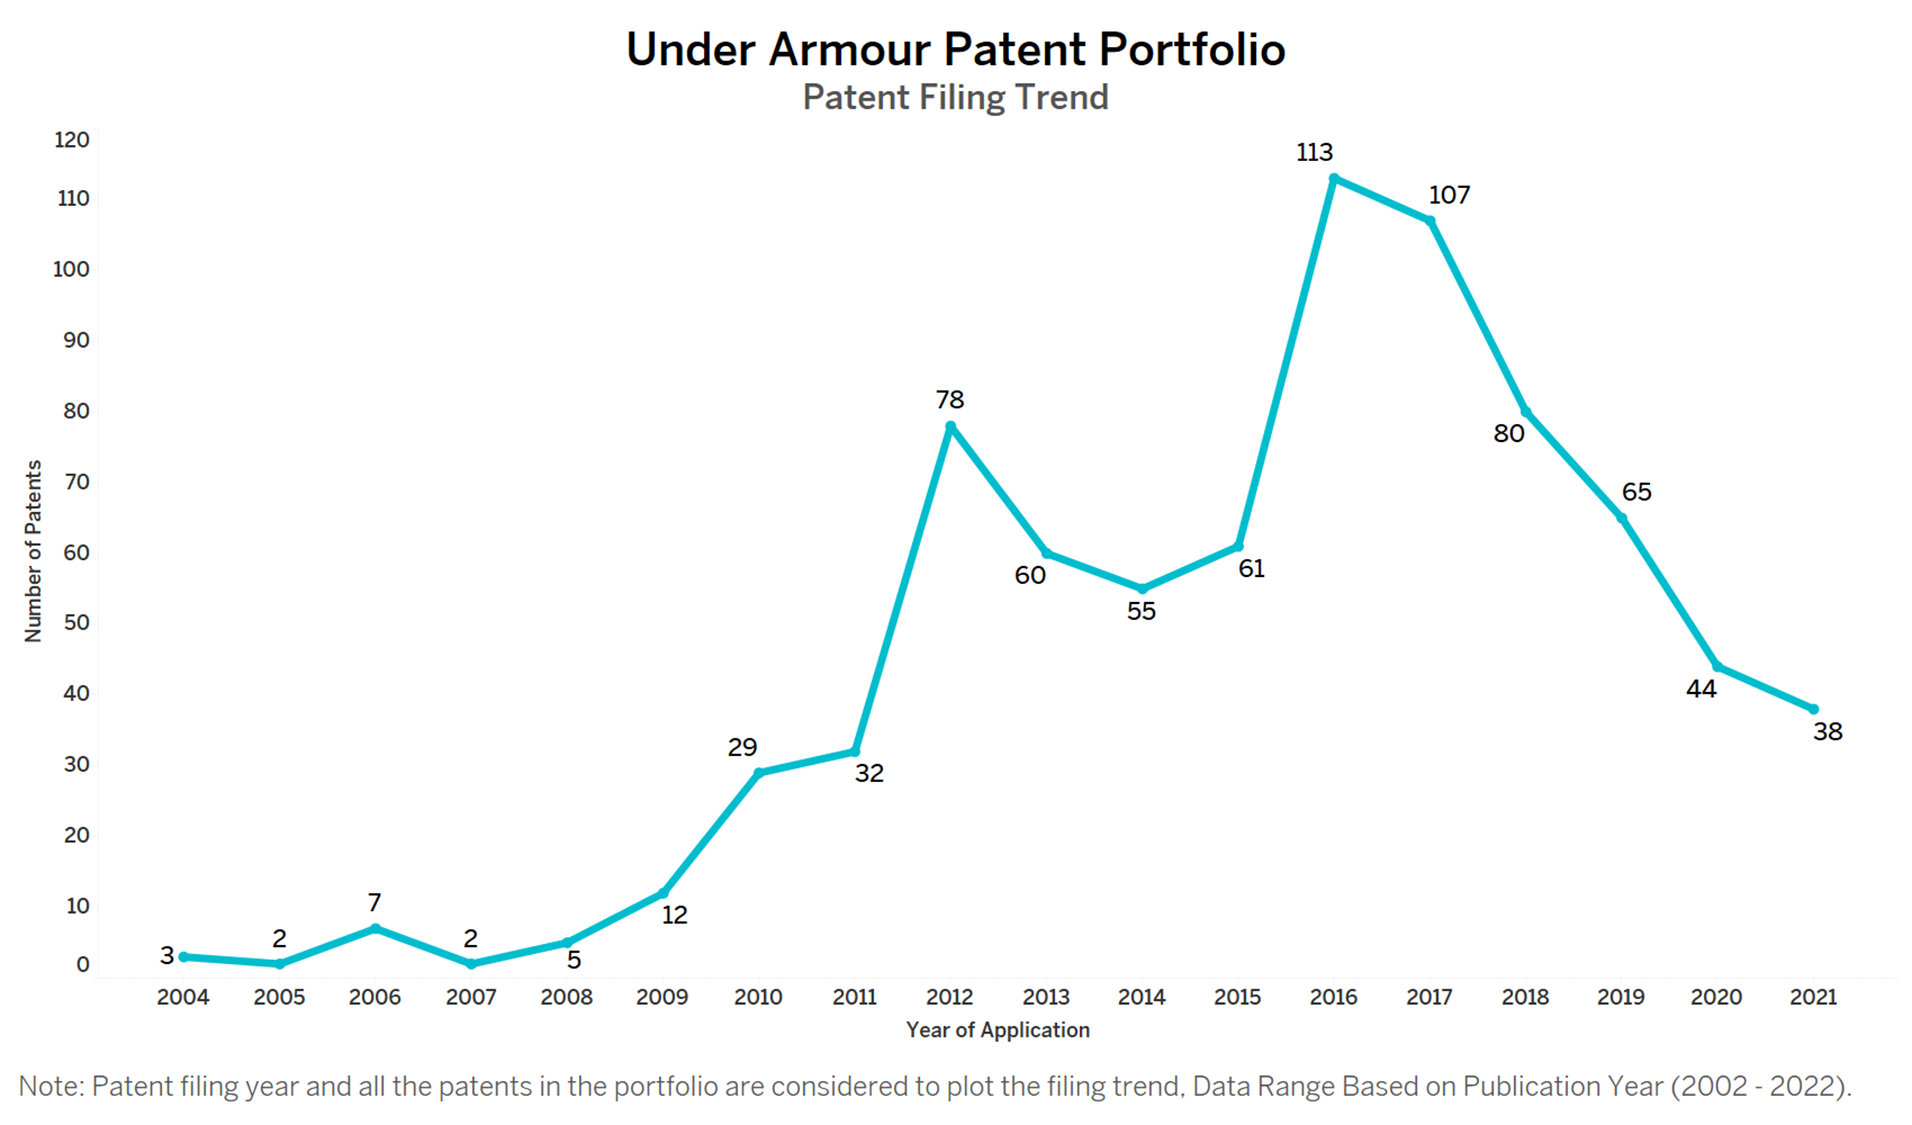 Vuiligheid Masaccio Geslagen vrachtwagen Under Armour Patent - Key Insights & Stats by Insights;Gate